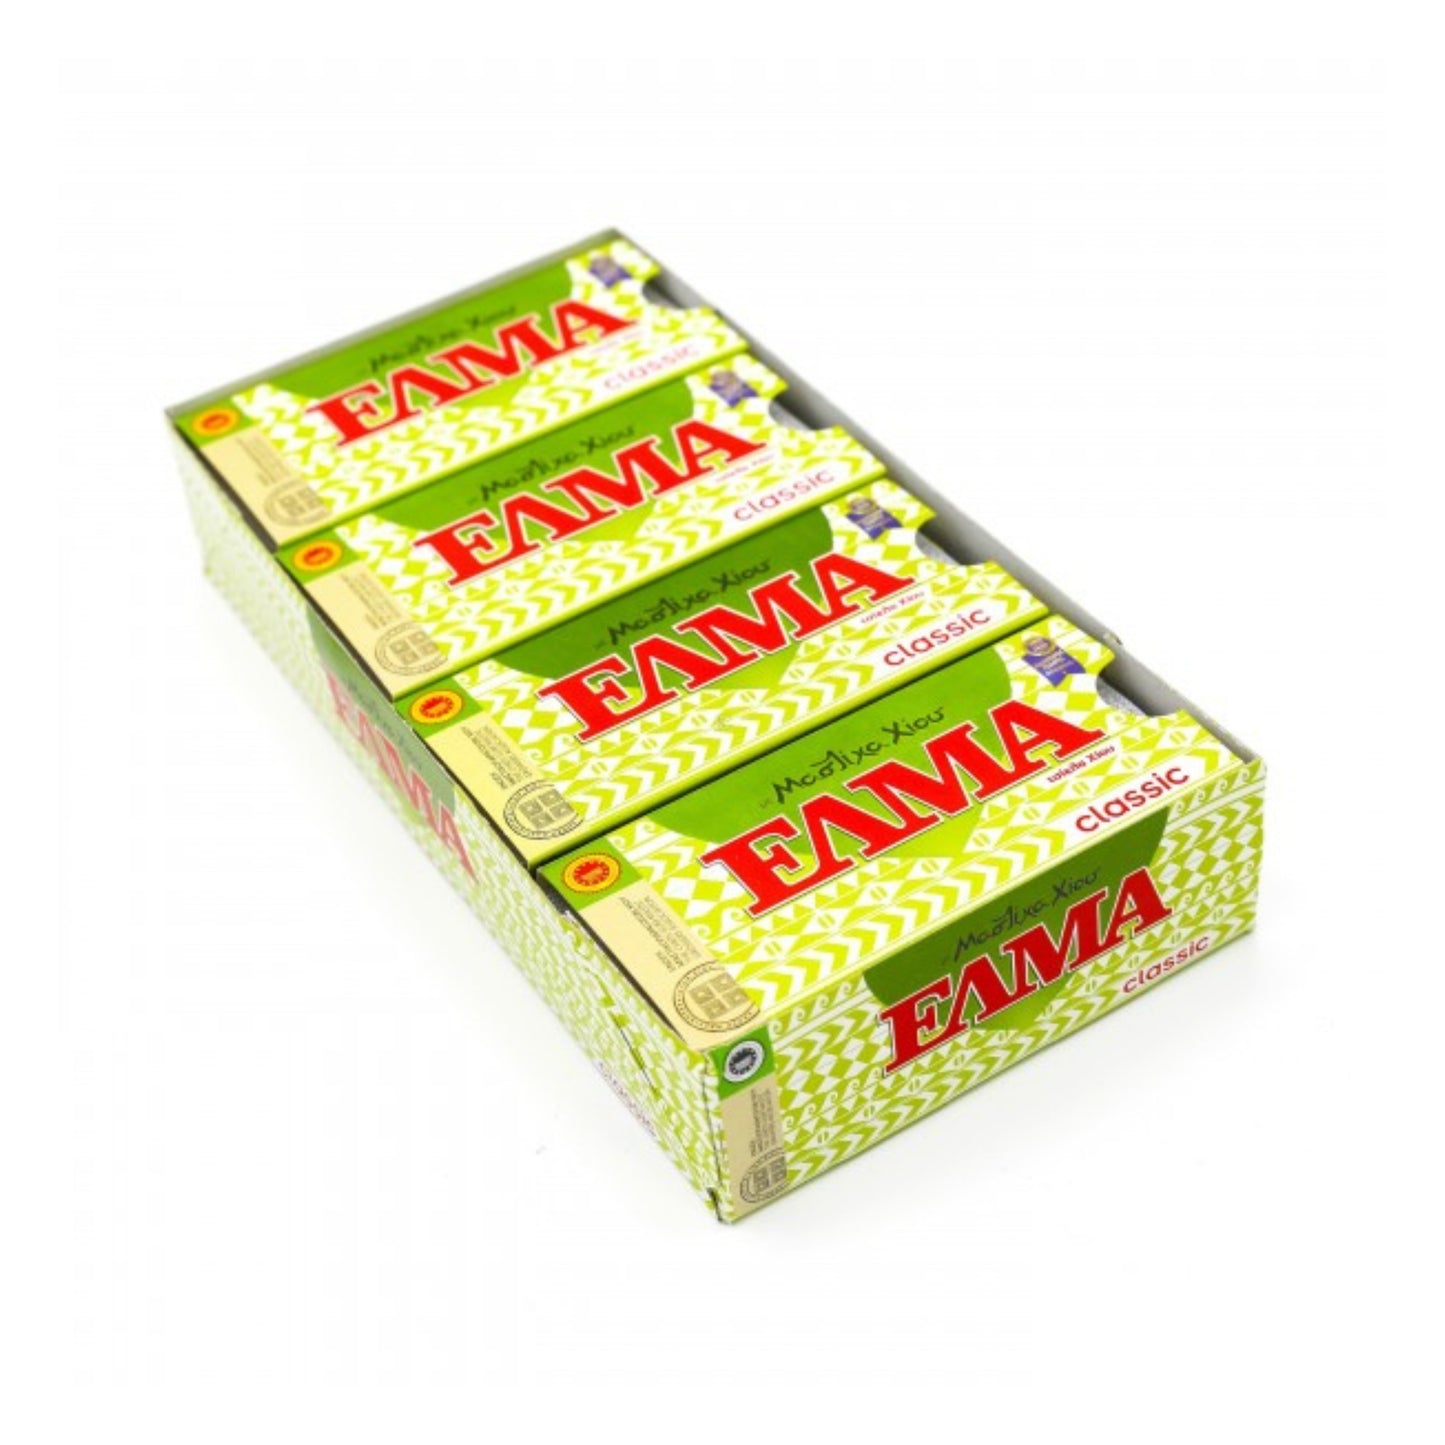 Elma Classic mastic gum - 20x13g